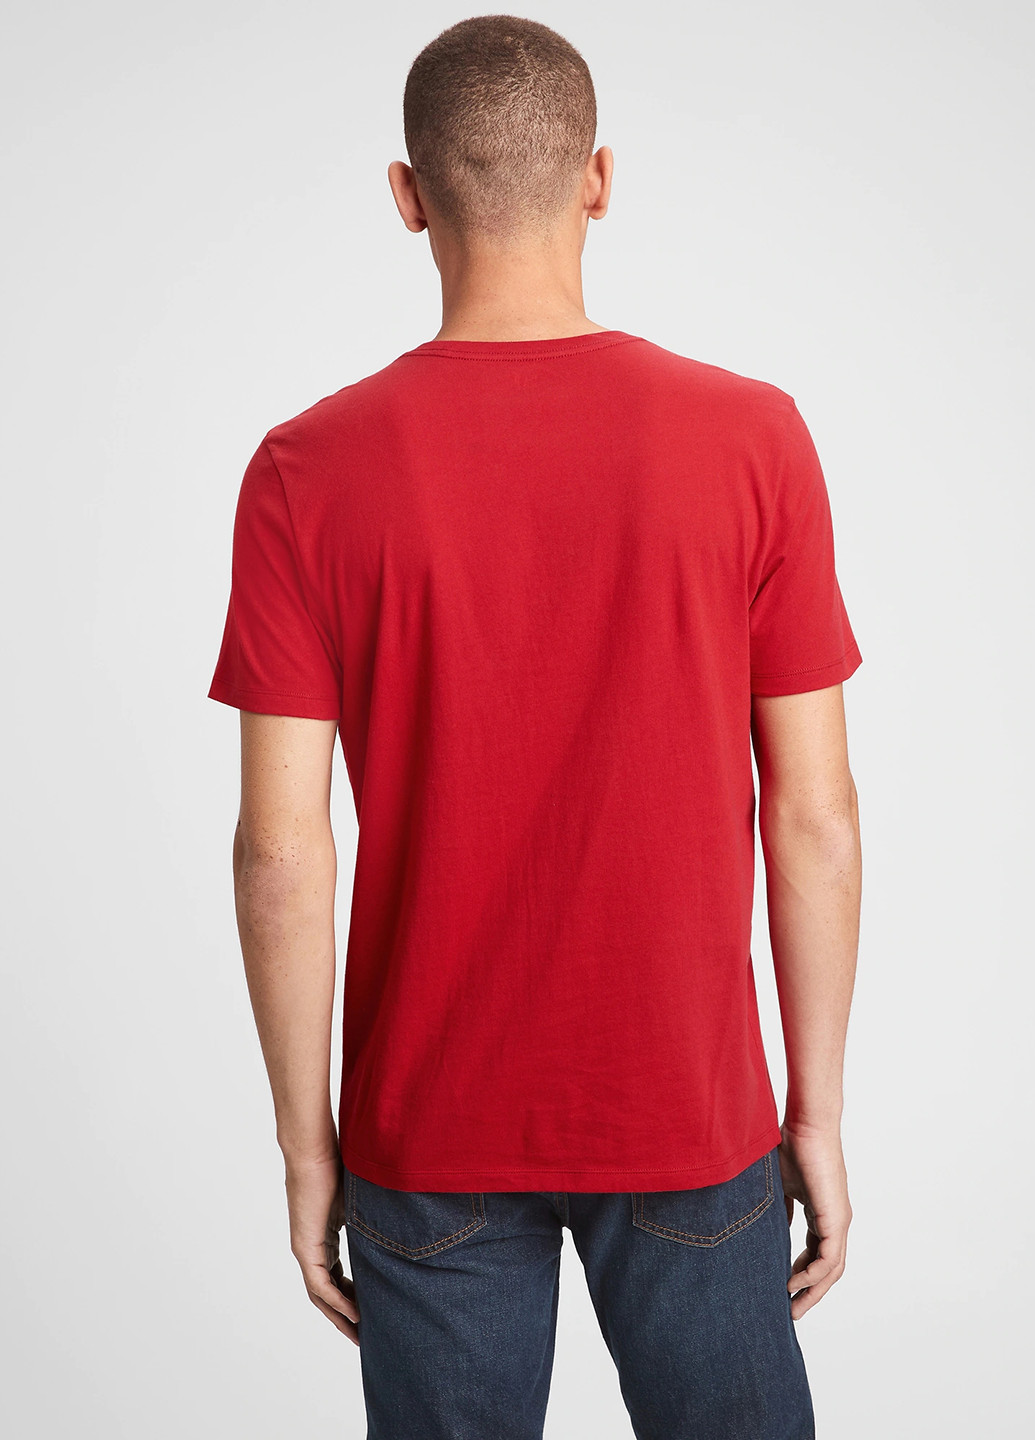 Красная футболка Gap